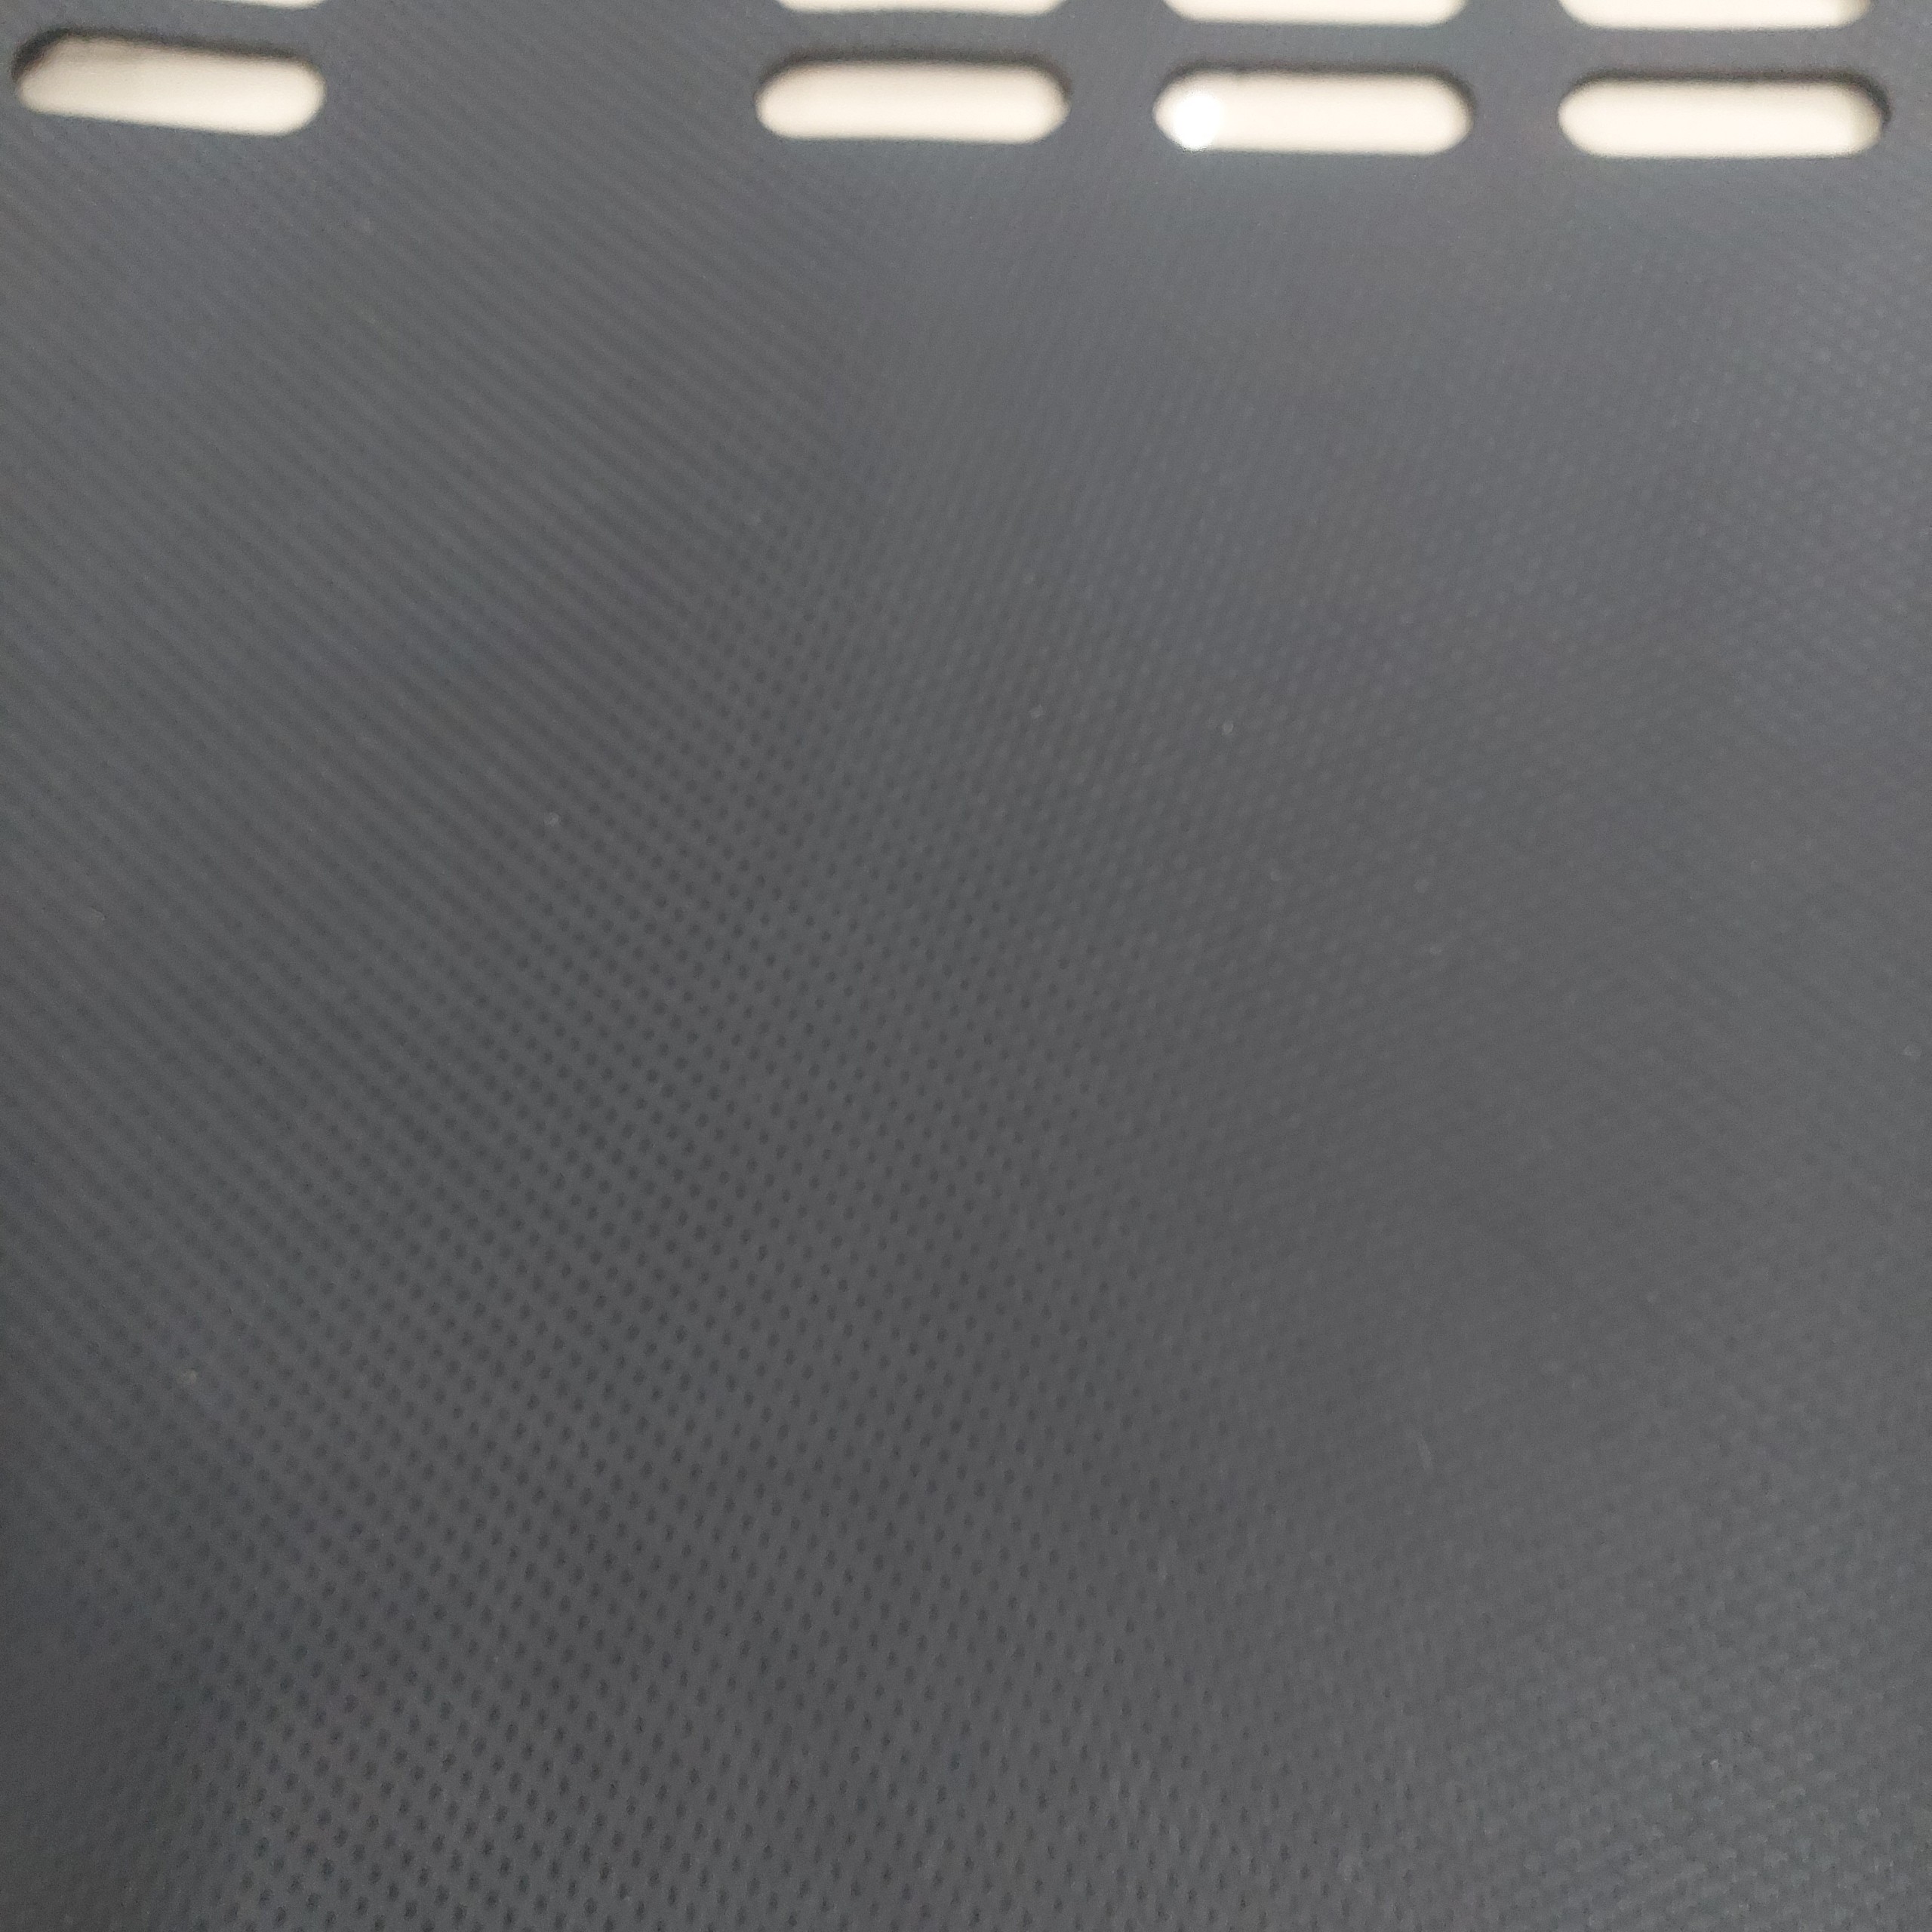 Thảm da Taplo vân Carbon Cao cấp dành cho xe Kia Cerato 2020 có khắc chữ Kia Cerato và cắt bằng máy lazer